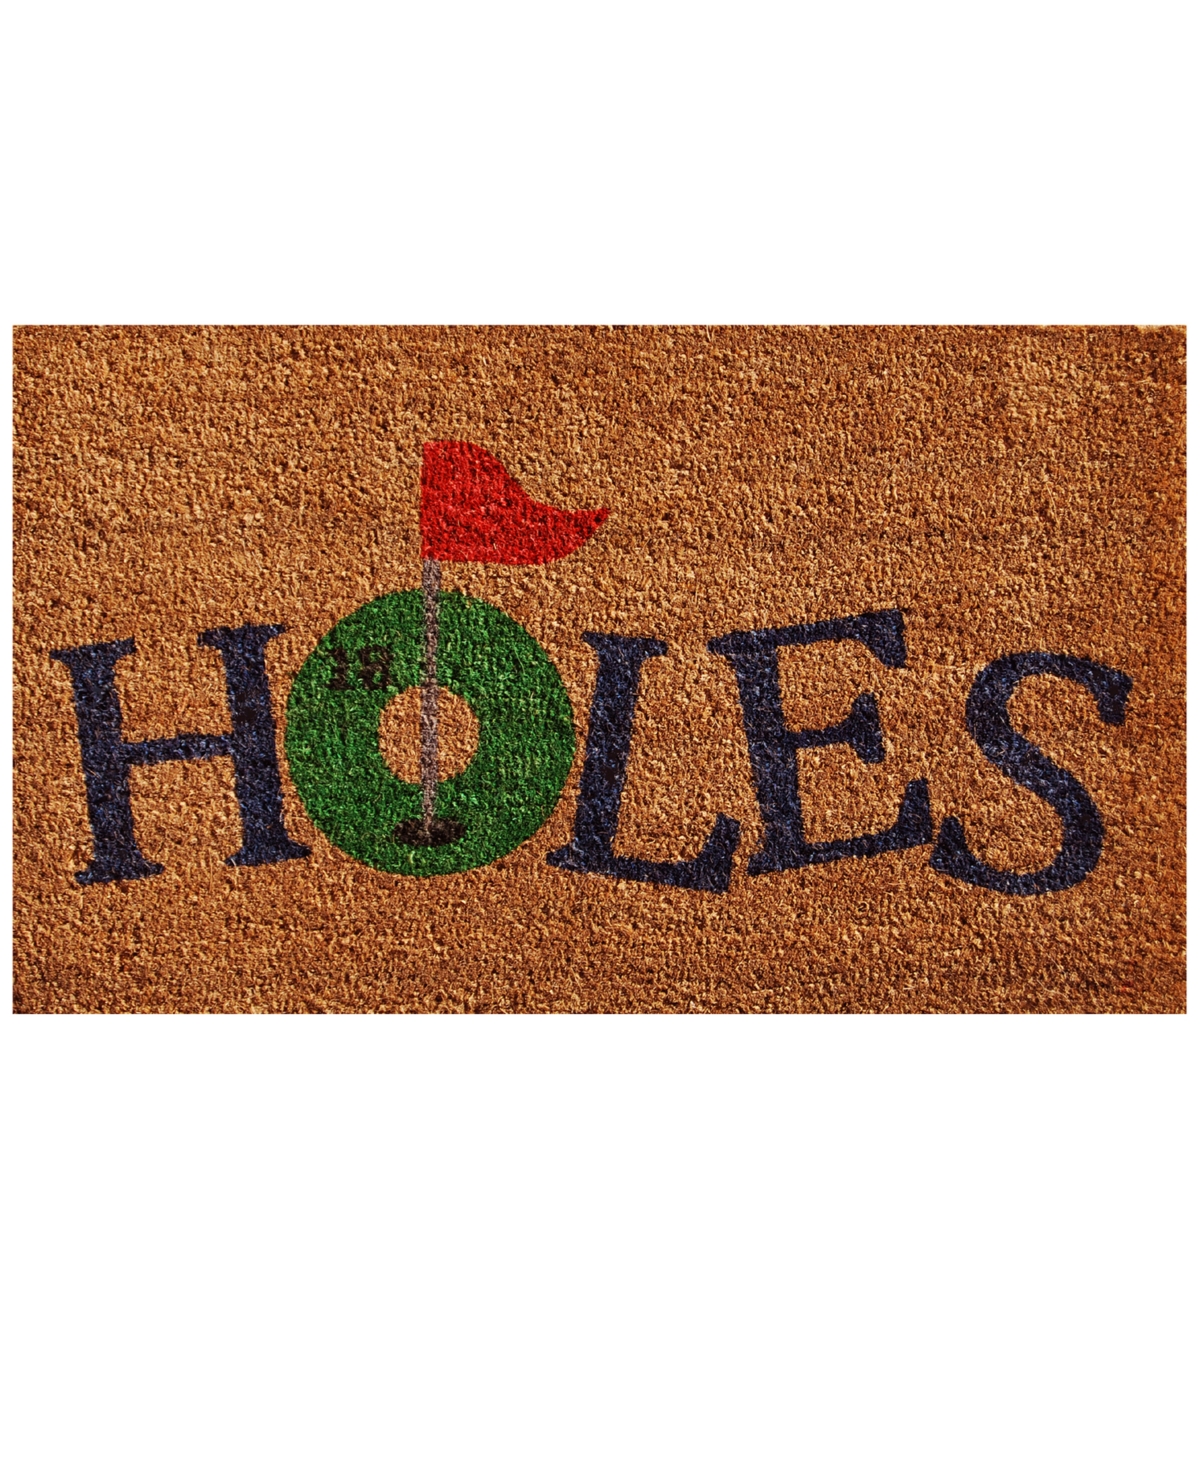 Home & More 18 Holes 24" X 36" Coir/vinyl Doormat In Multi